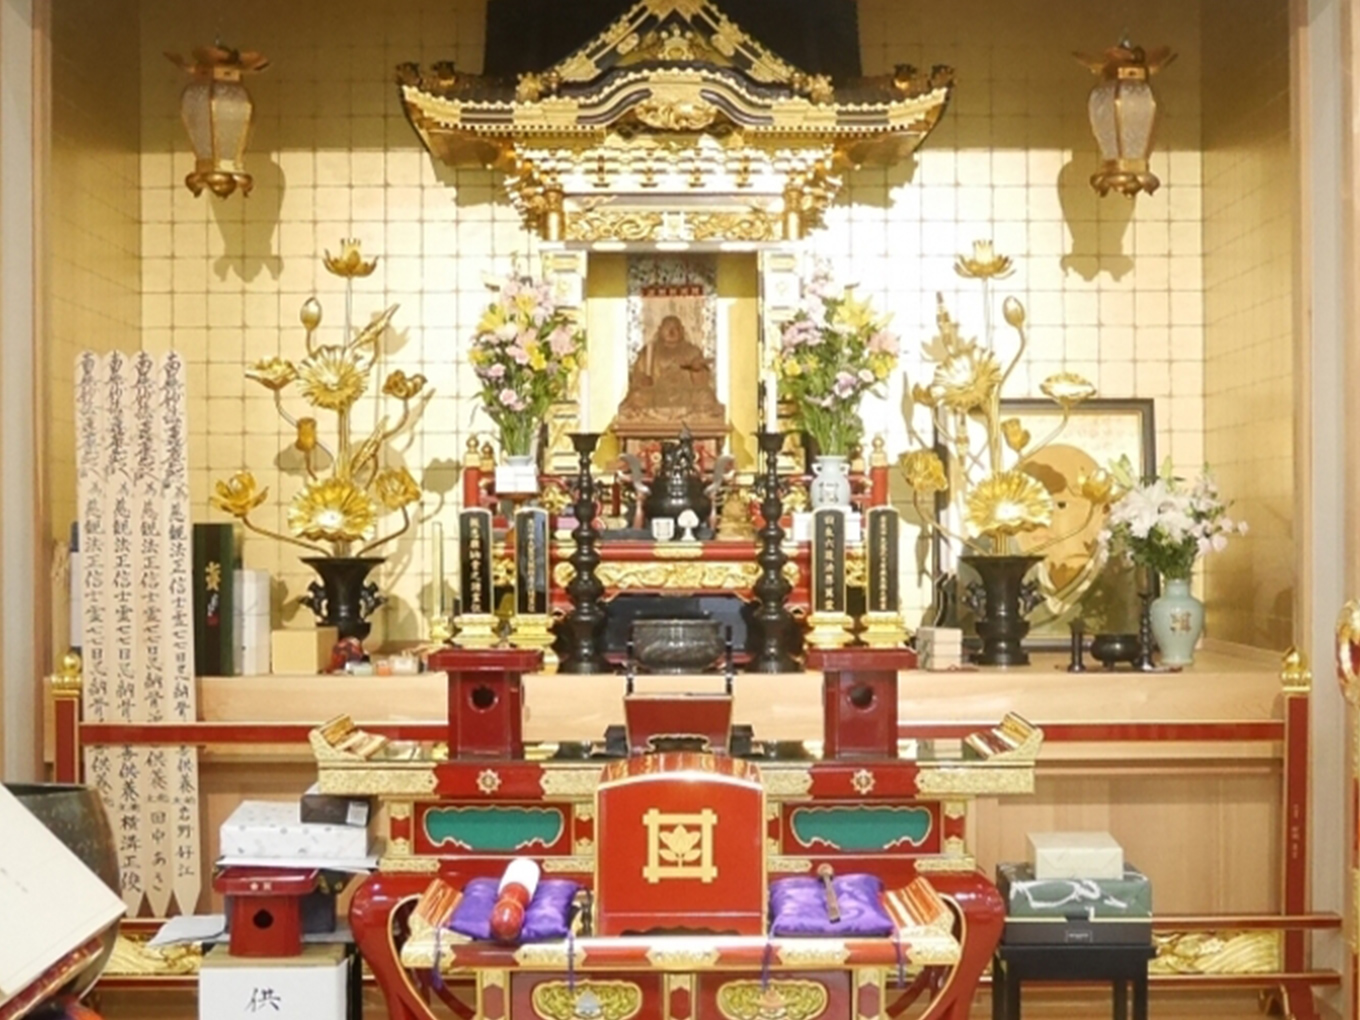 千葉で葬儀・葬式・家族葬が税込10.45万円からできる小さな森の家 妙恩寺の外観